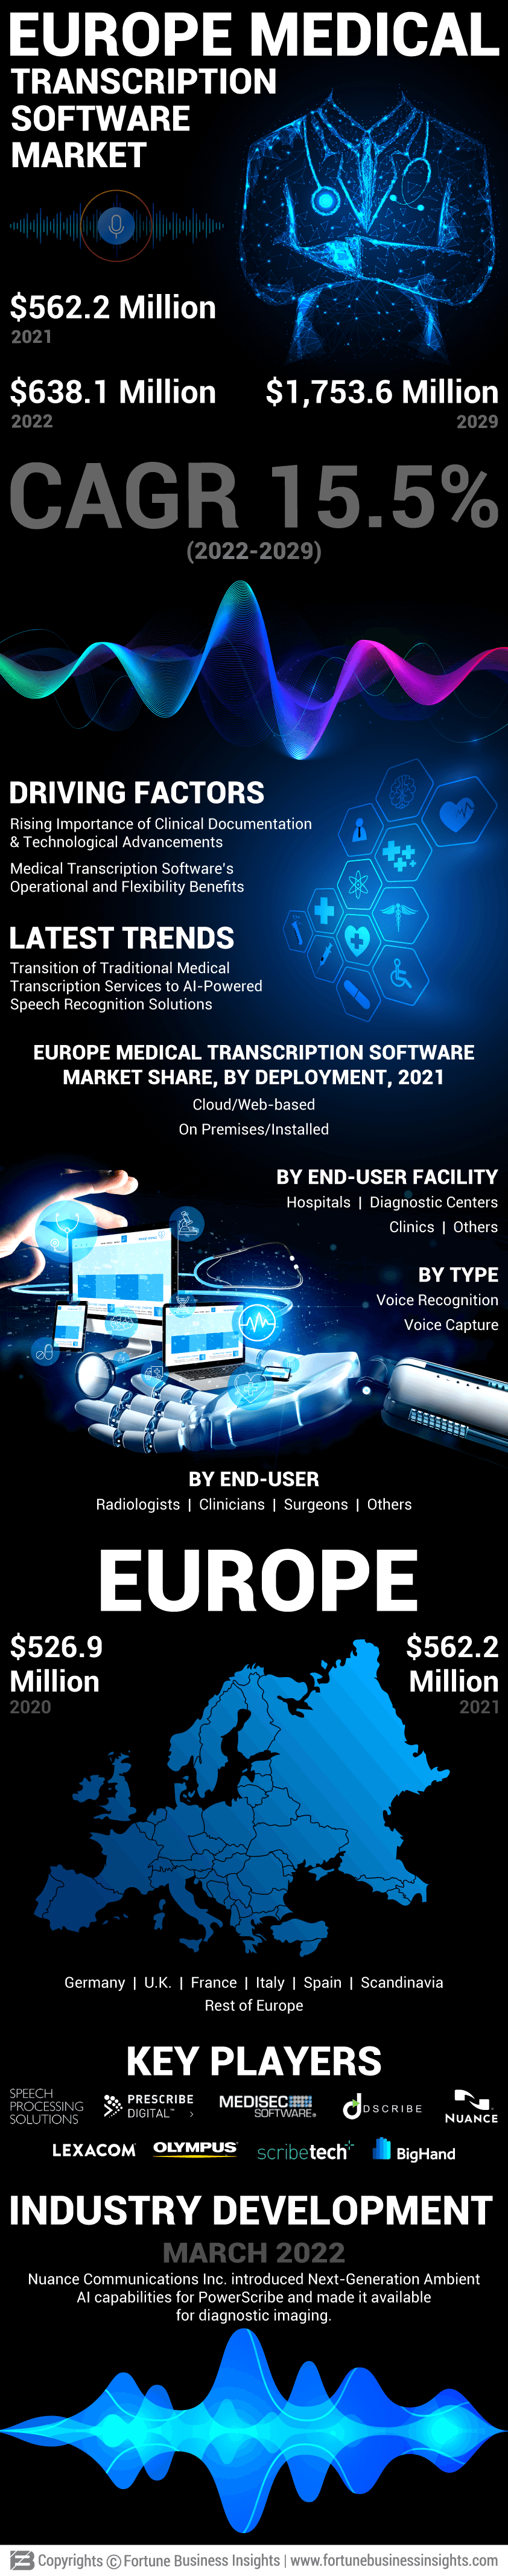 Europe Medical Transcription Software Market